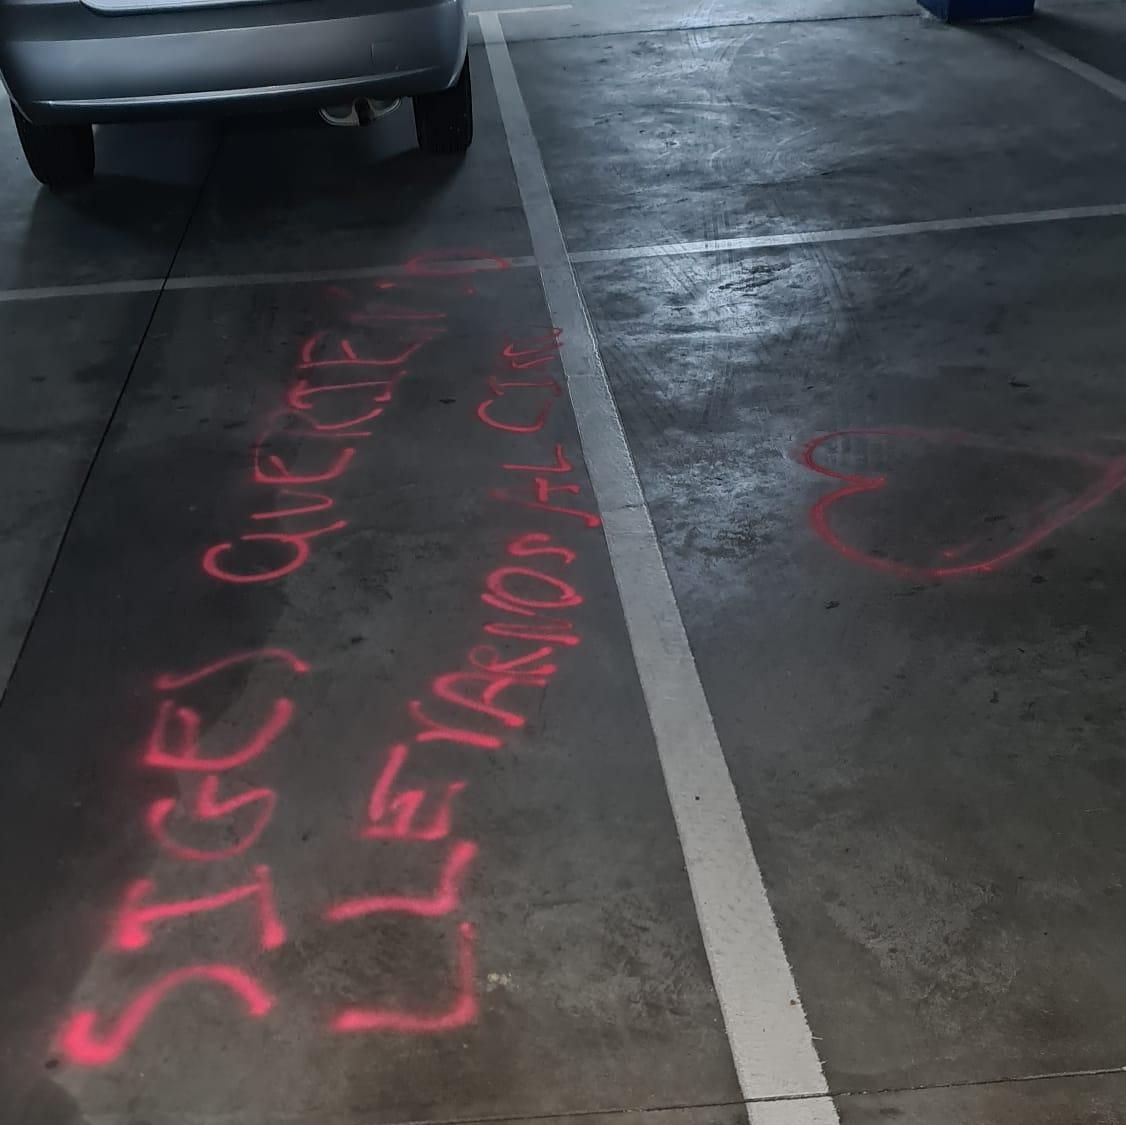 Pintadas obscenas en el aparcamiento subterráneo de La Marina en Zamora